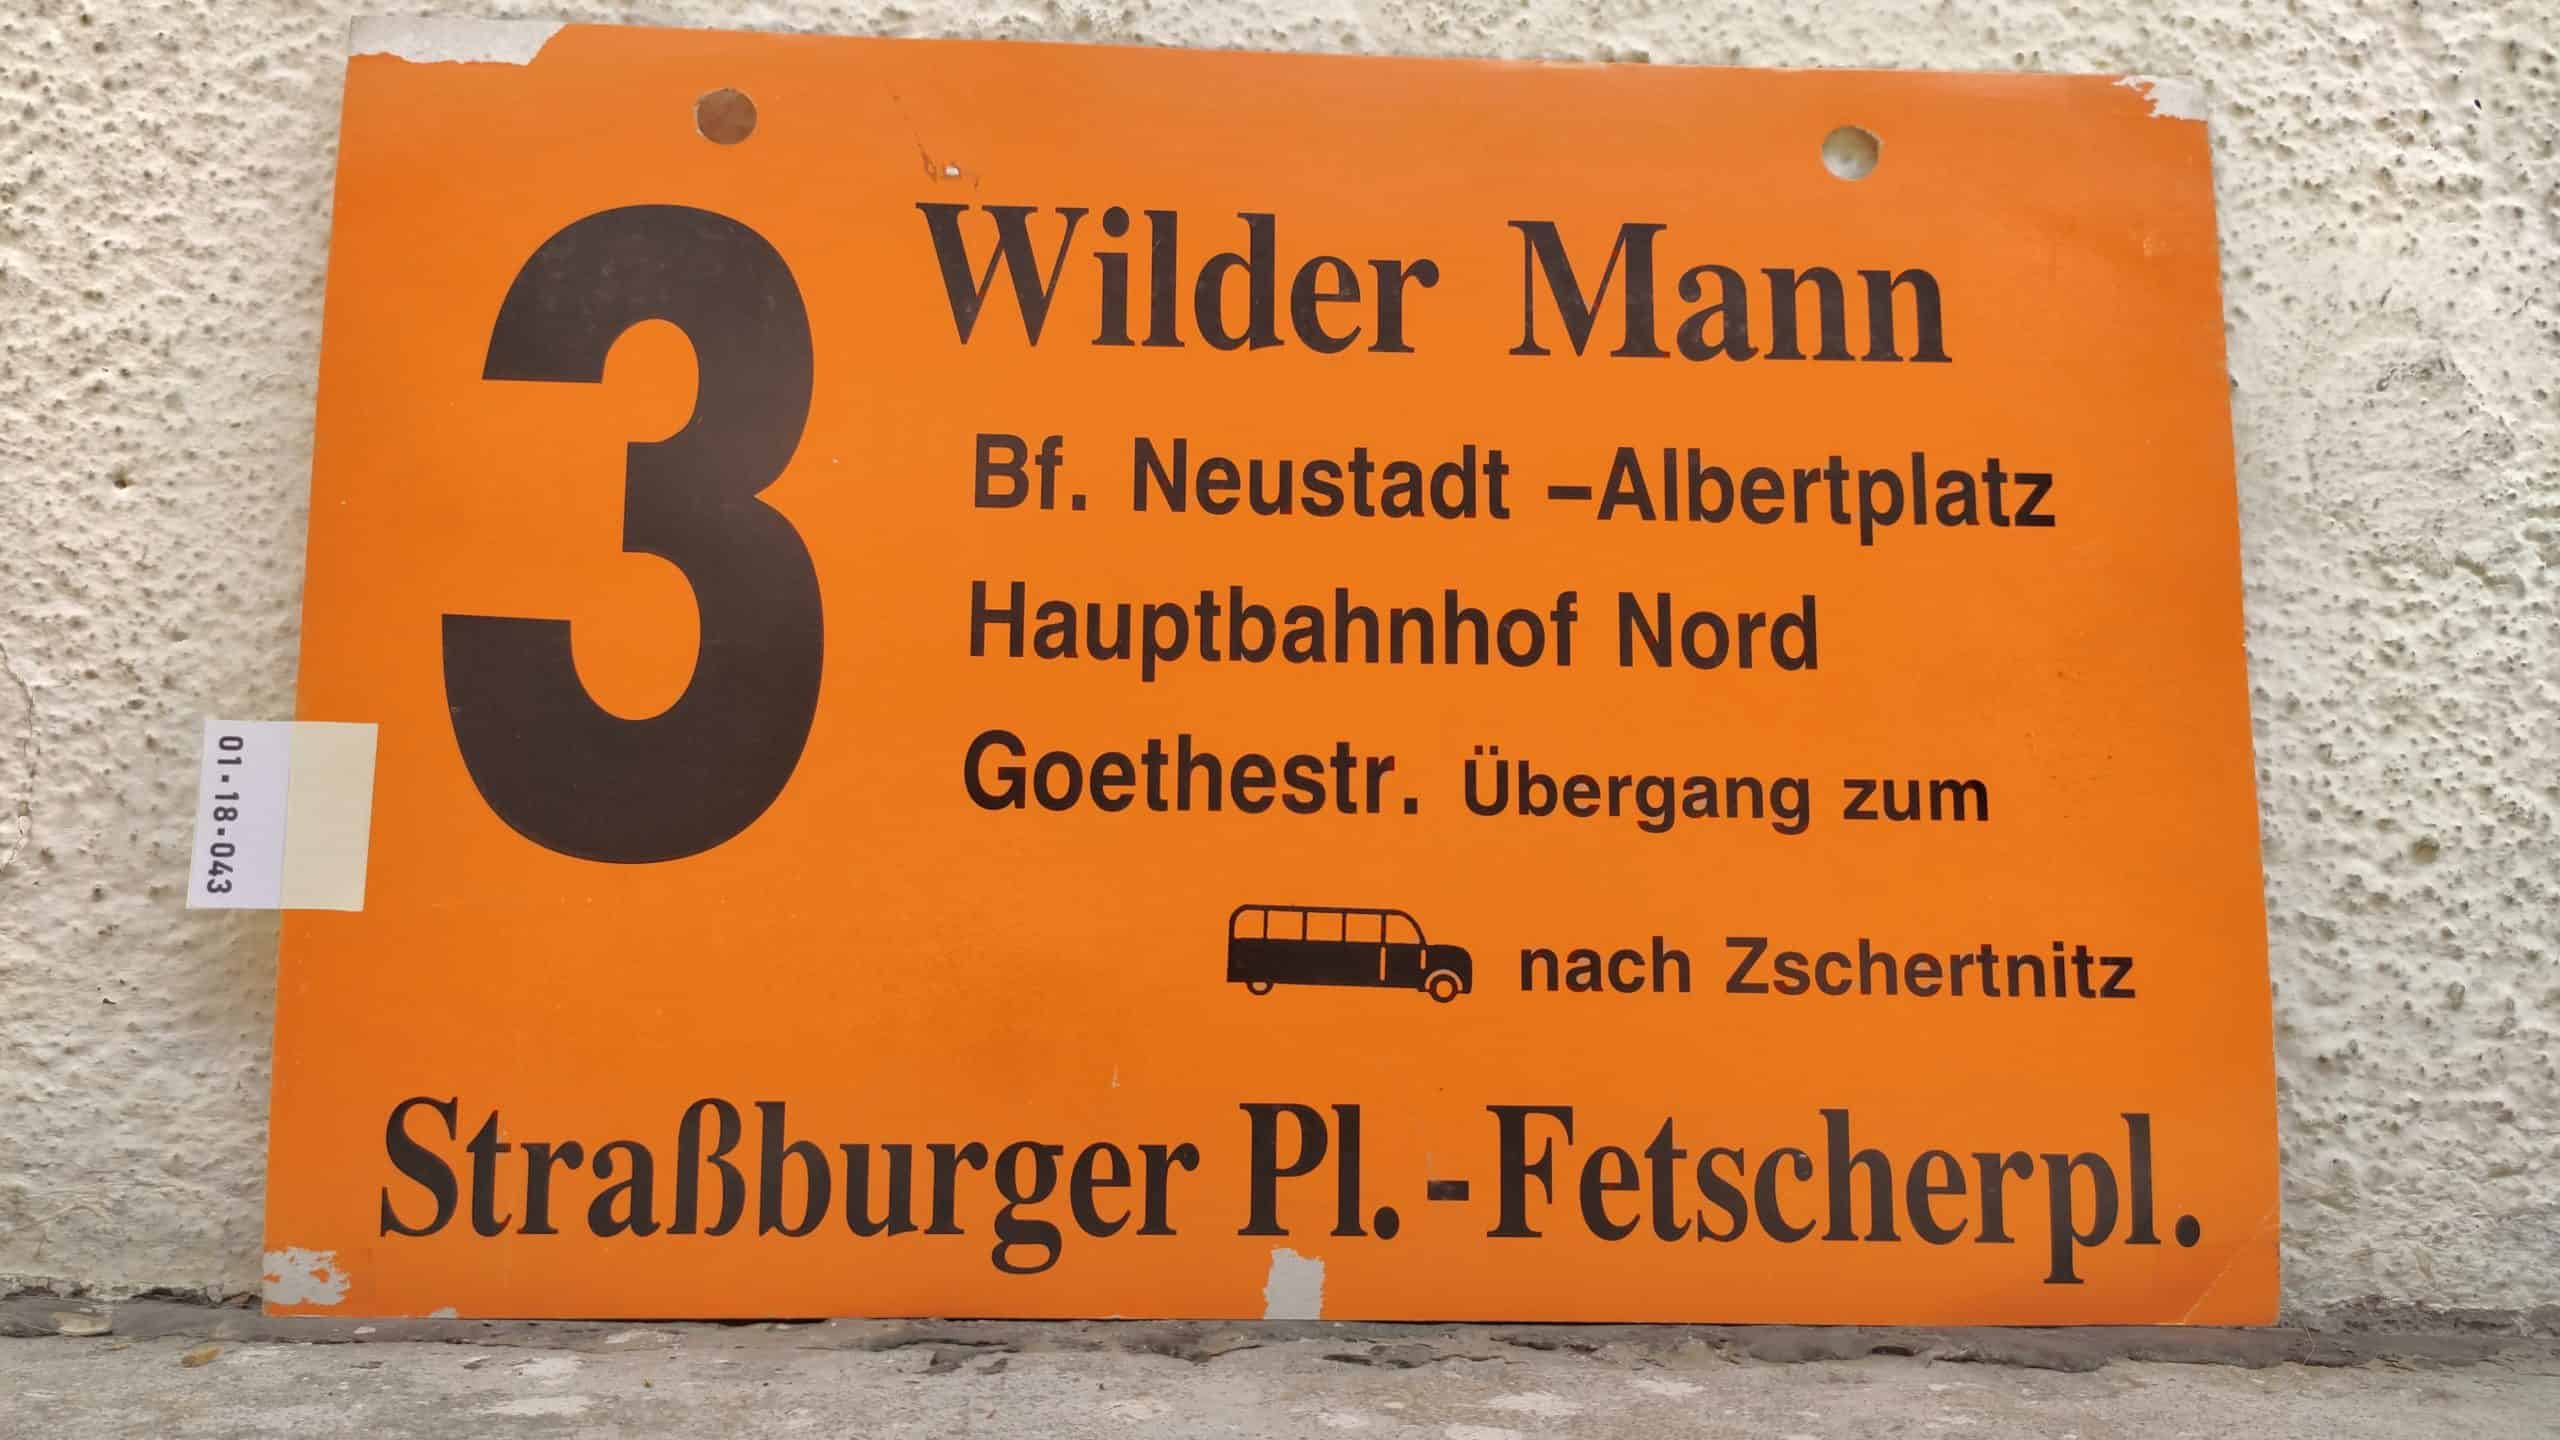 3 Wilder Mann – Fetscherpl.